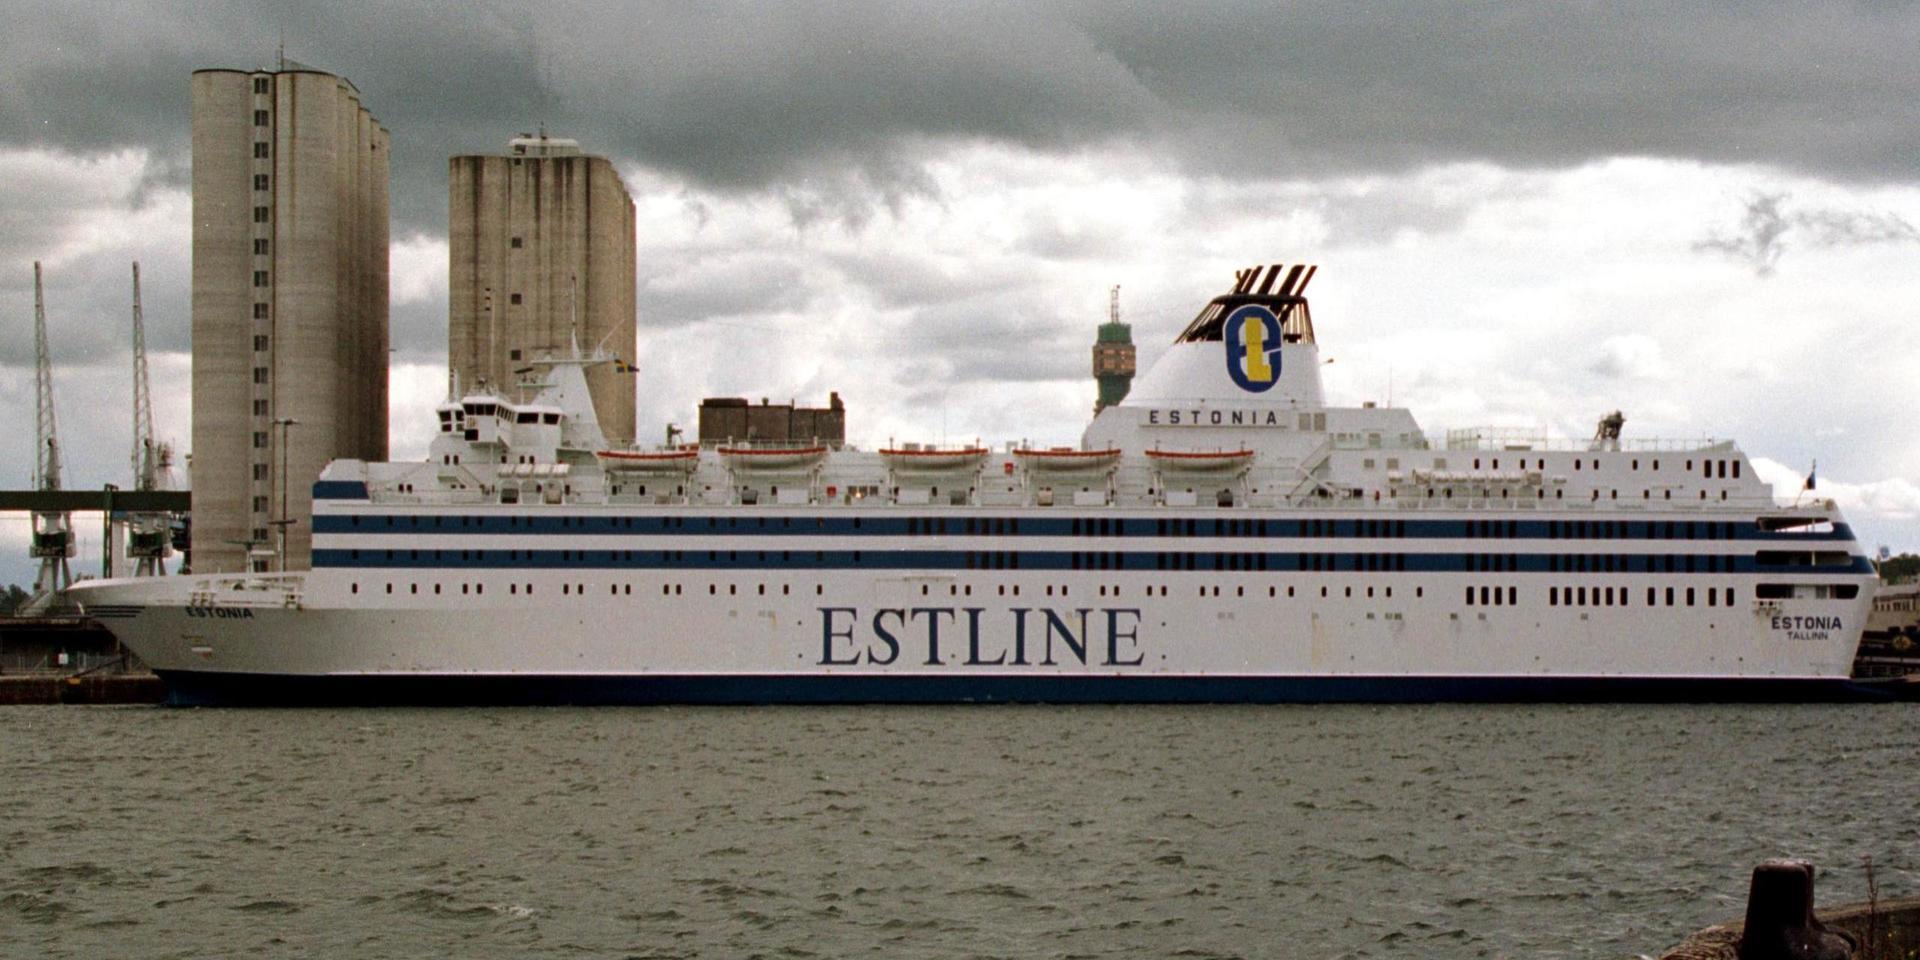 Fartyget M/S Estonia i kaj vid Värtahamnen i Stockholm, i augusti 1993. Fartyget hette några år dessförinnan Viking Sally och var då målat i rött i stället för blått. Arkivbild.